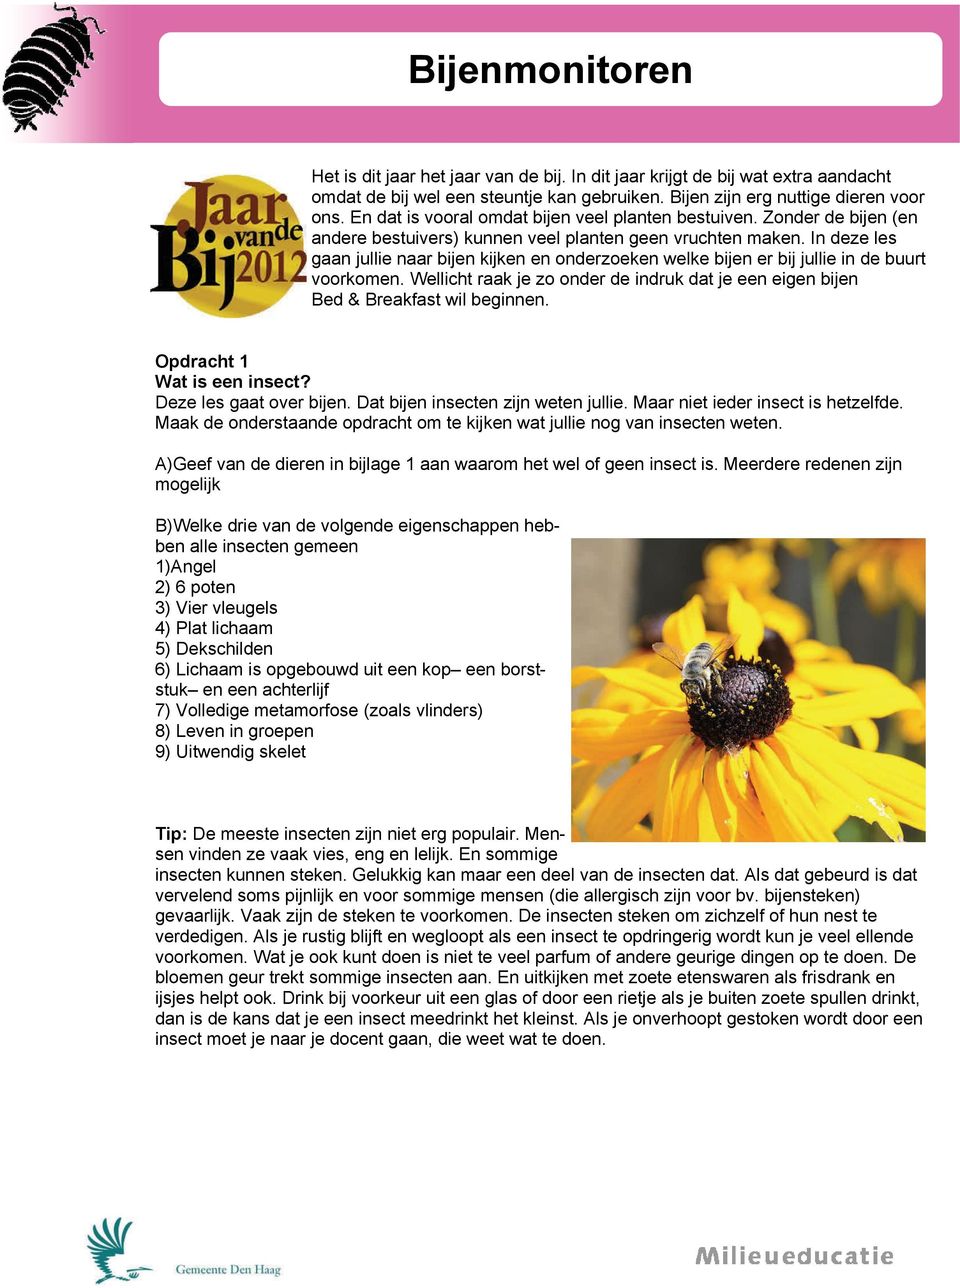 In deze les gaan jullie naar bijen kijken en onderzoeken welke bijen er bij jullie in de buurt voorkomen. Wellicht raak je zo onder de indruk dat je een eigen bijen Bed & Breakfast wil beginnen.